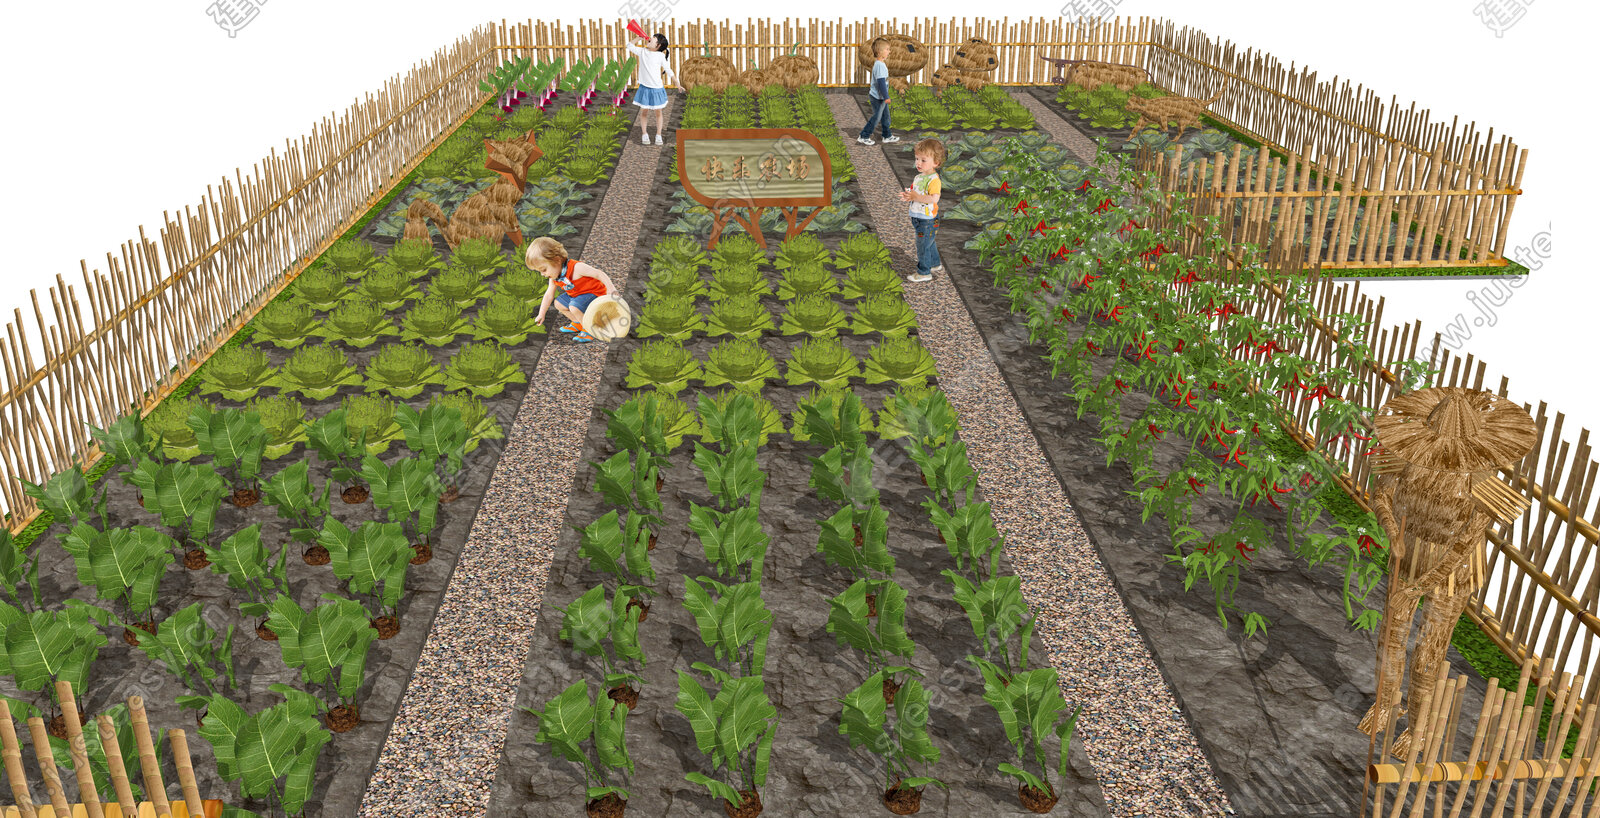 现代庭院菜园 菜地 蔬菜 种植园 篱笆 田园景观 可食地景SU模型 庭院景观SU模型